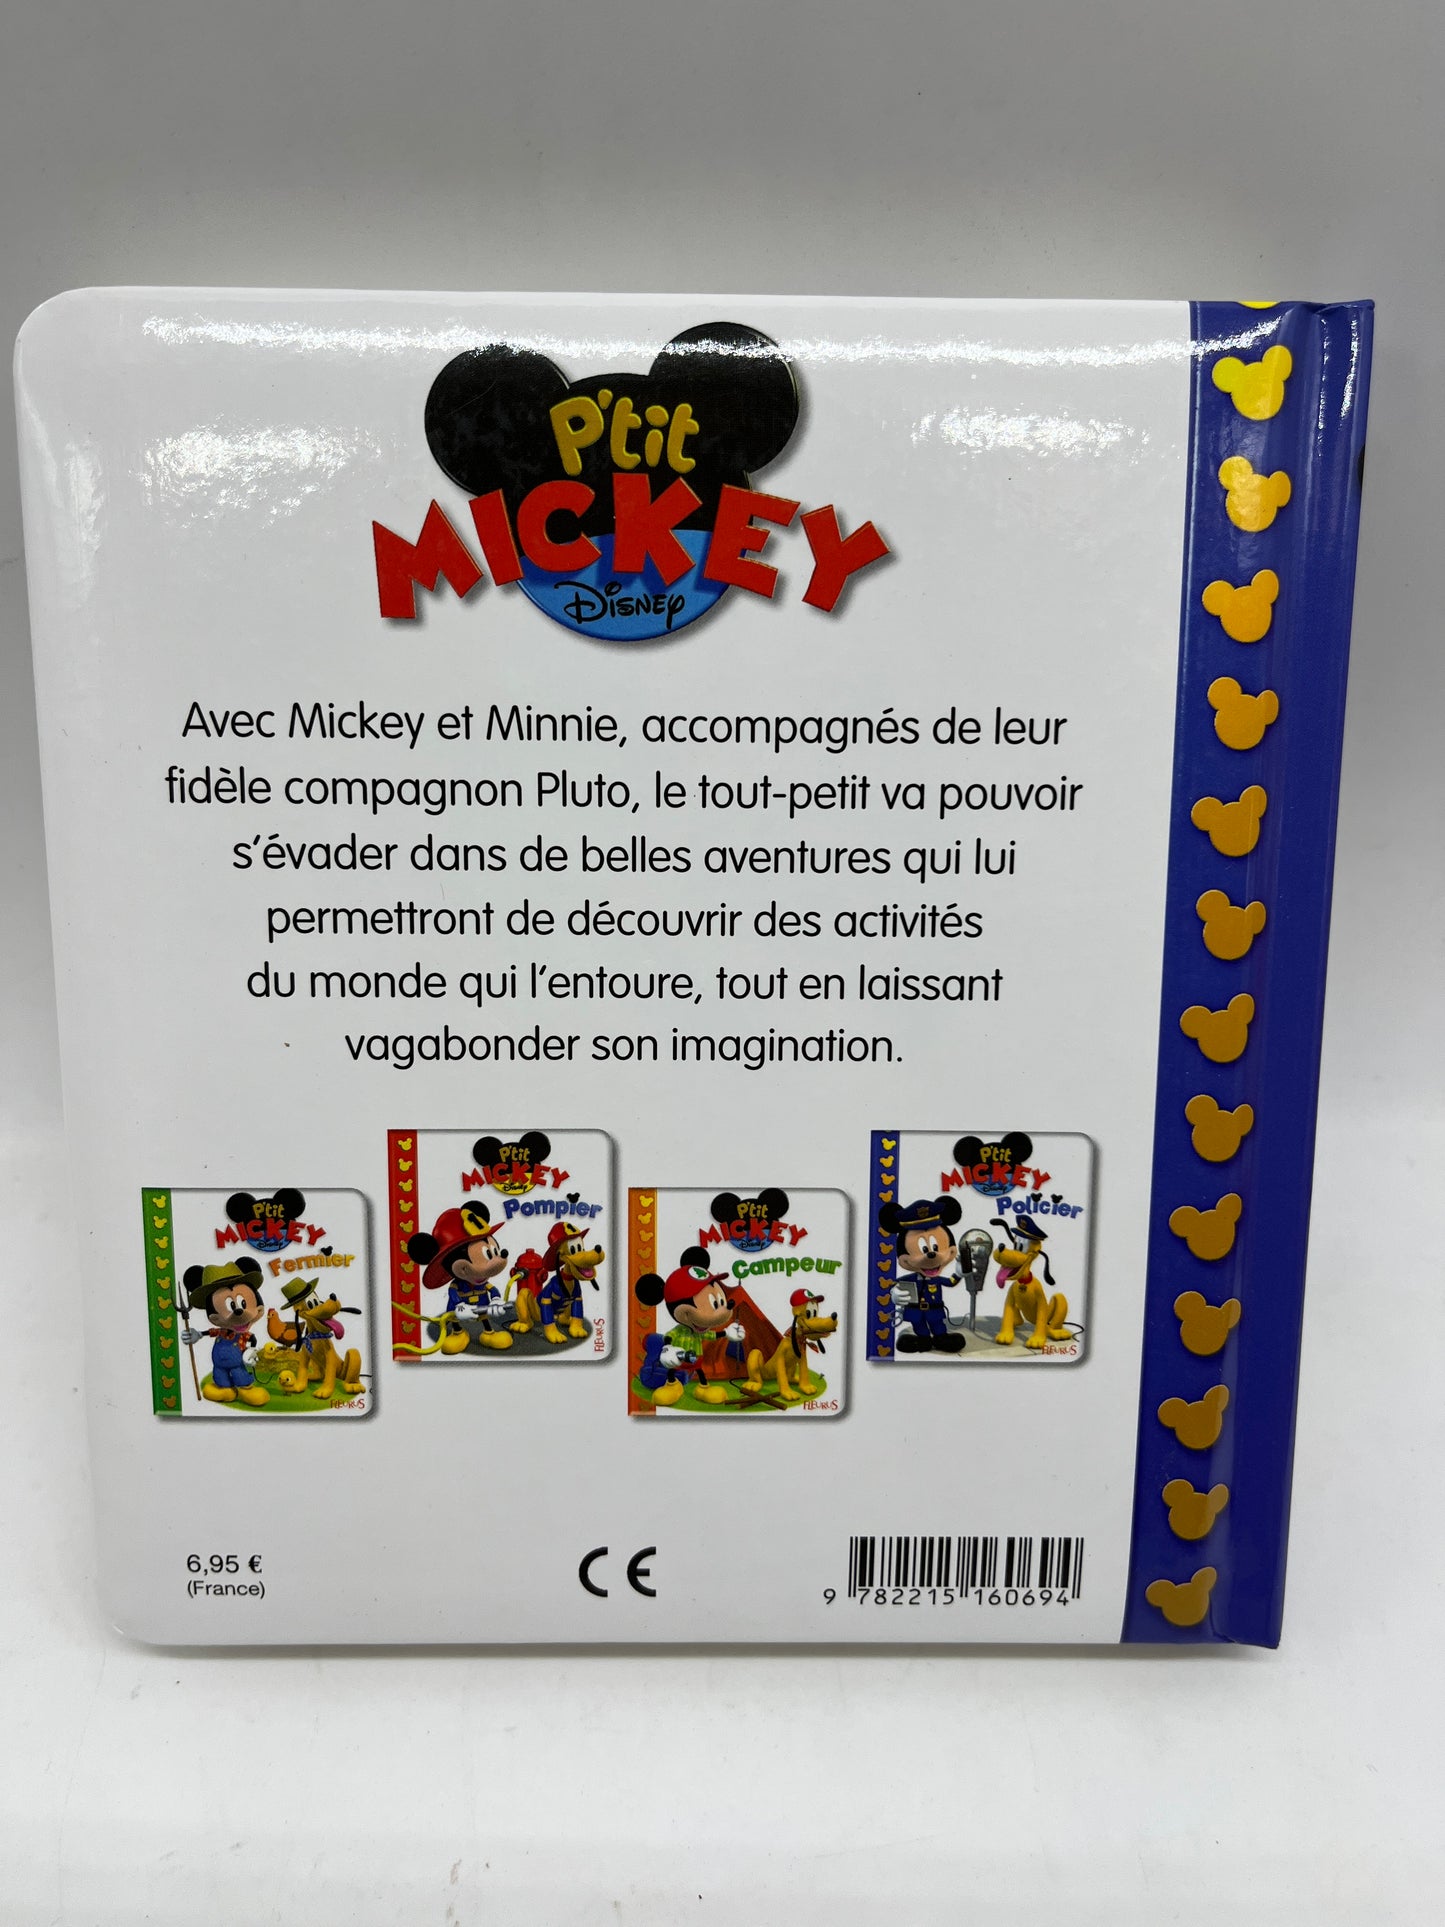 Livre histoire P’tit Mickey disney modèle Policier édition Fleurus Neuf